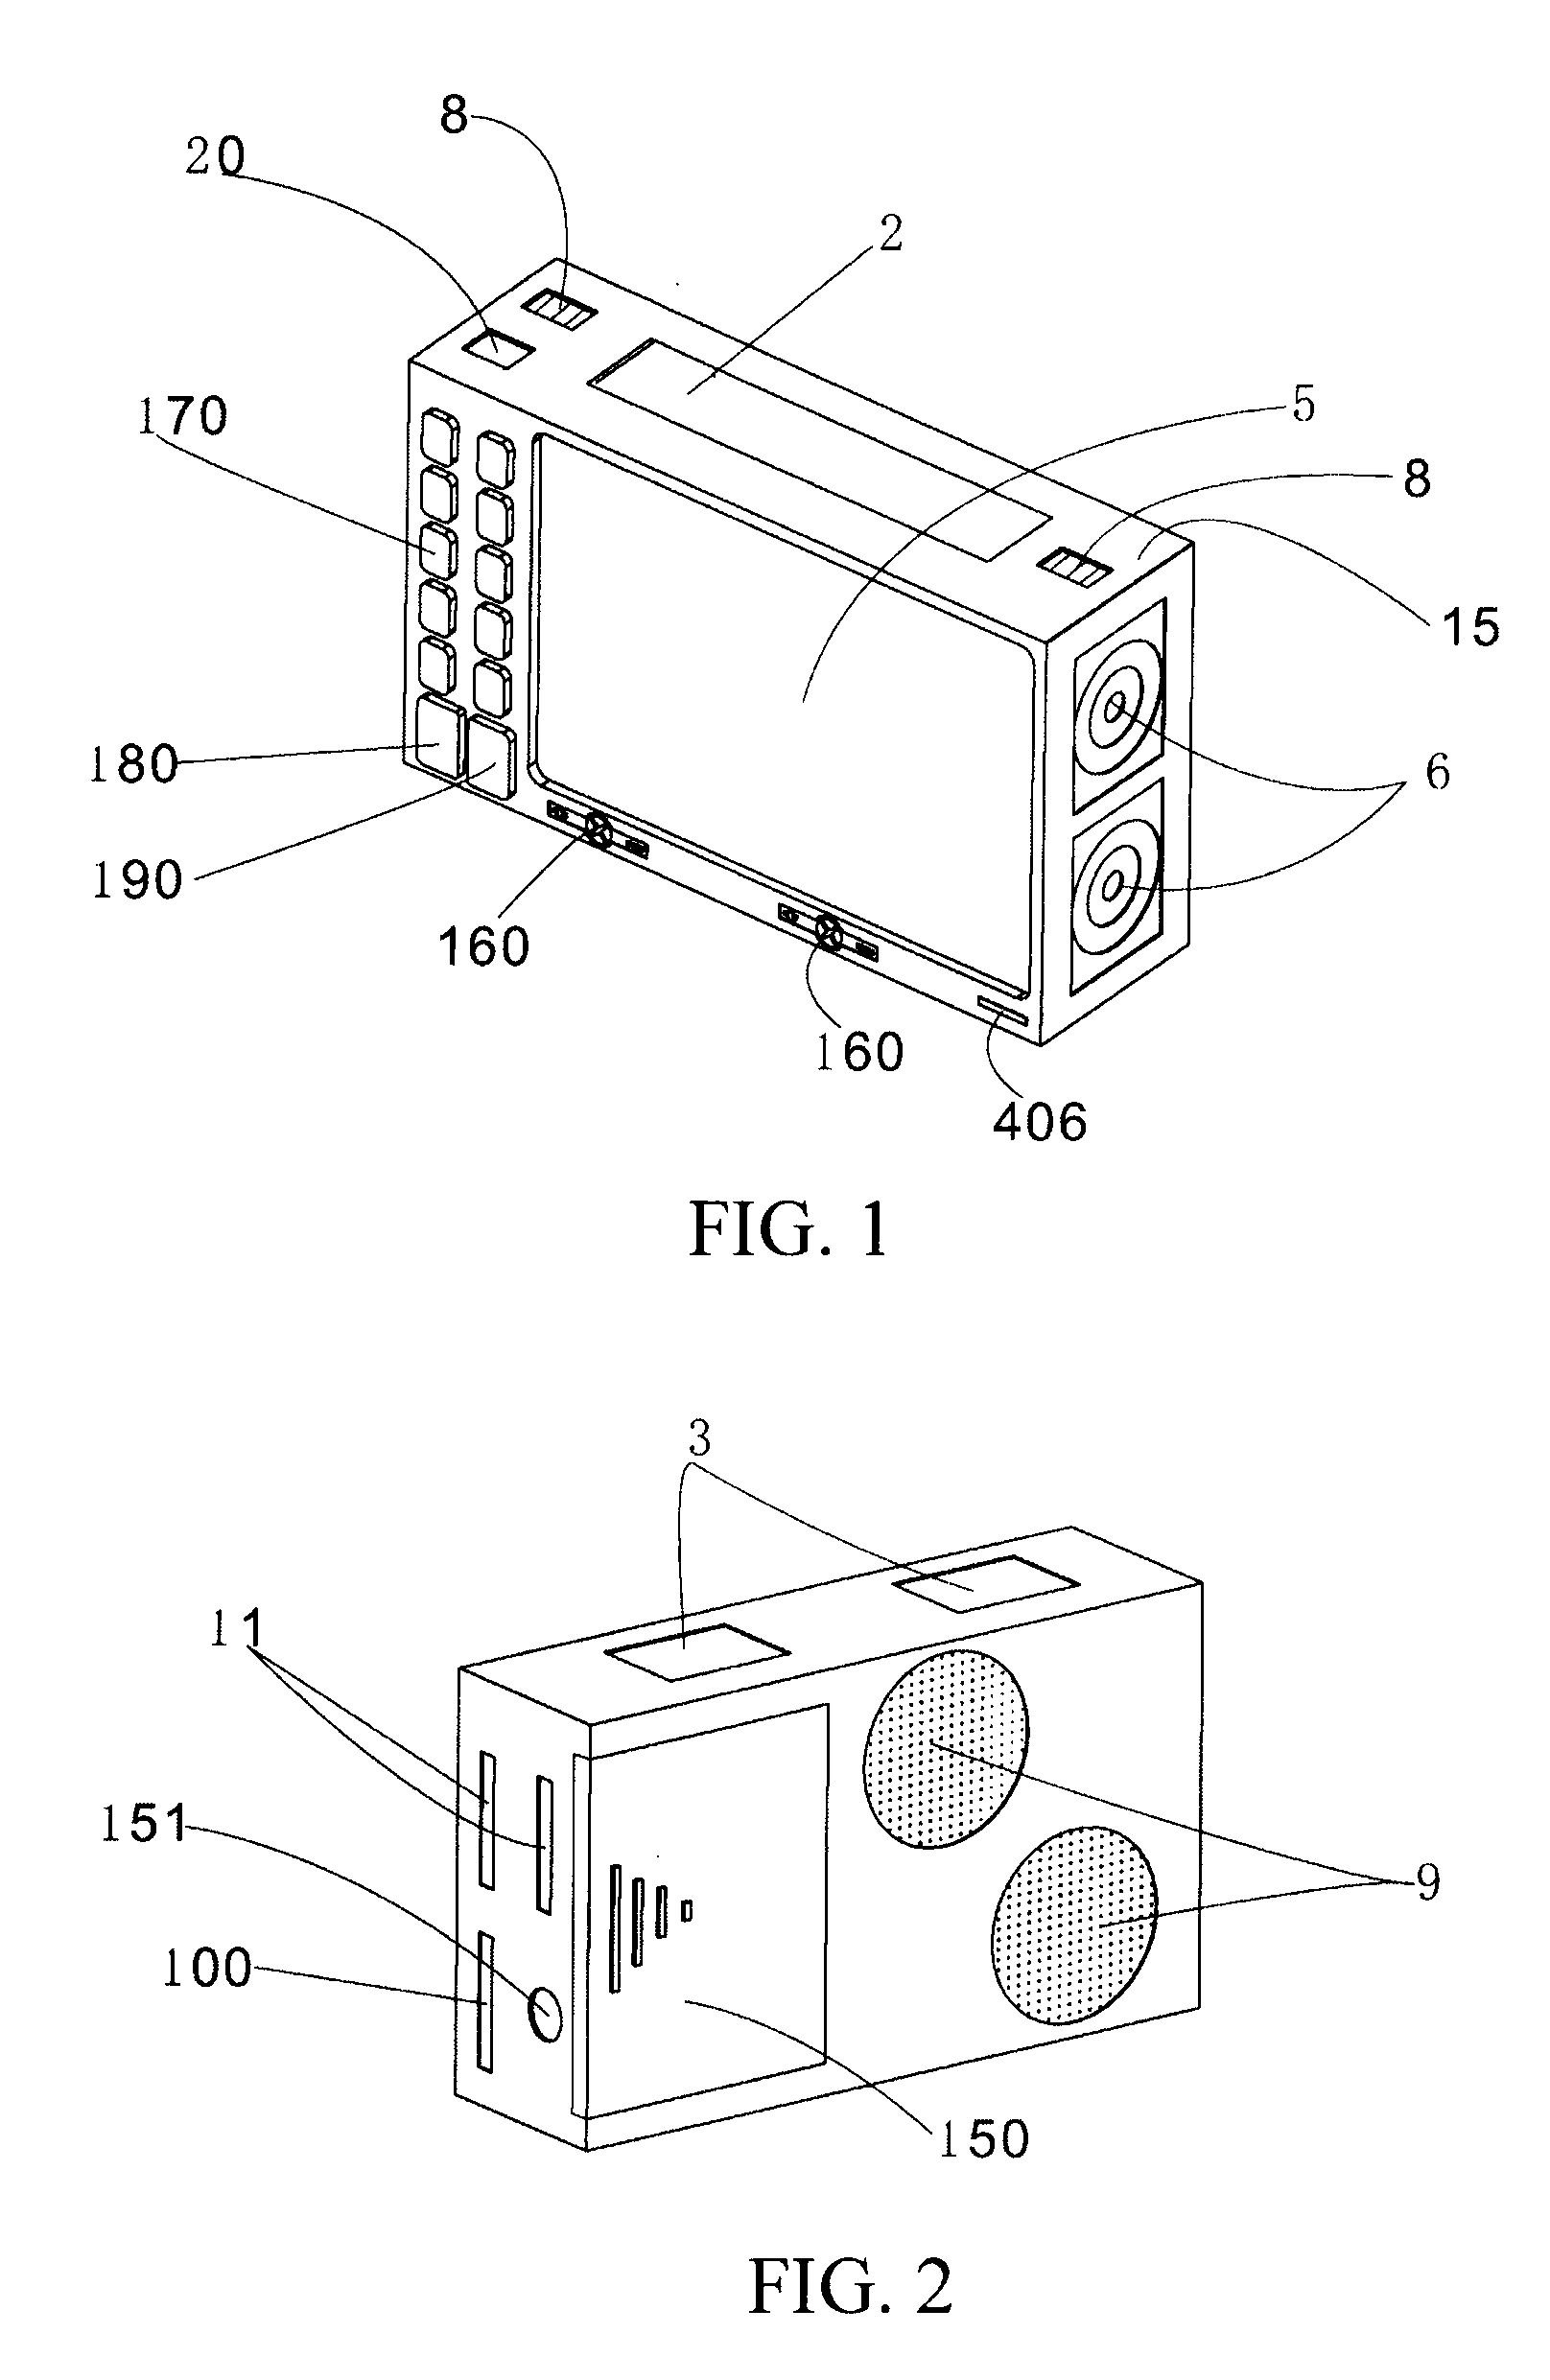 Portable integrative stereoscopic video multimedia device